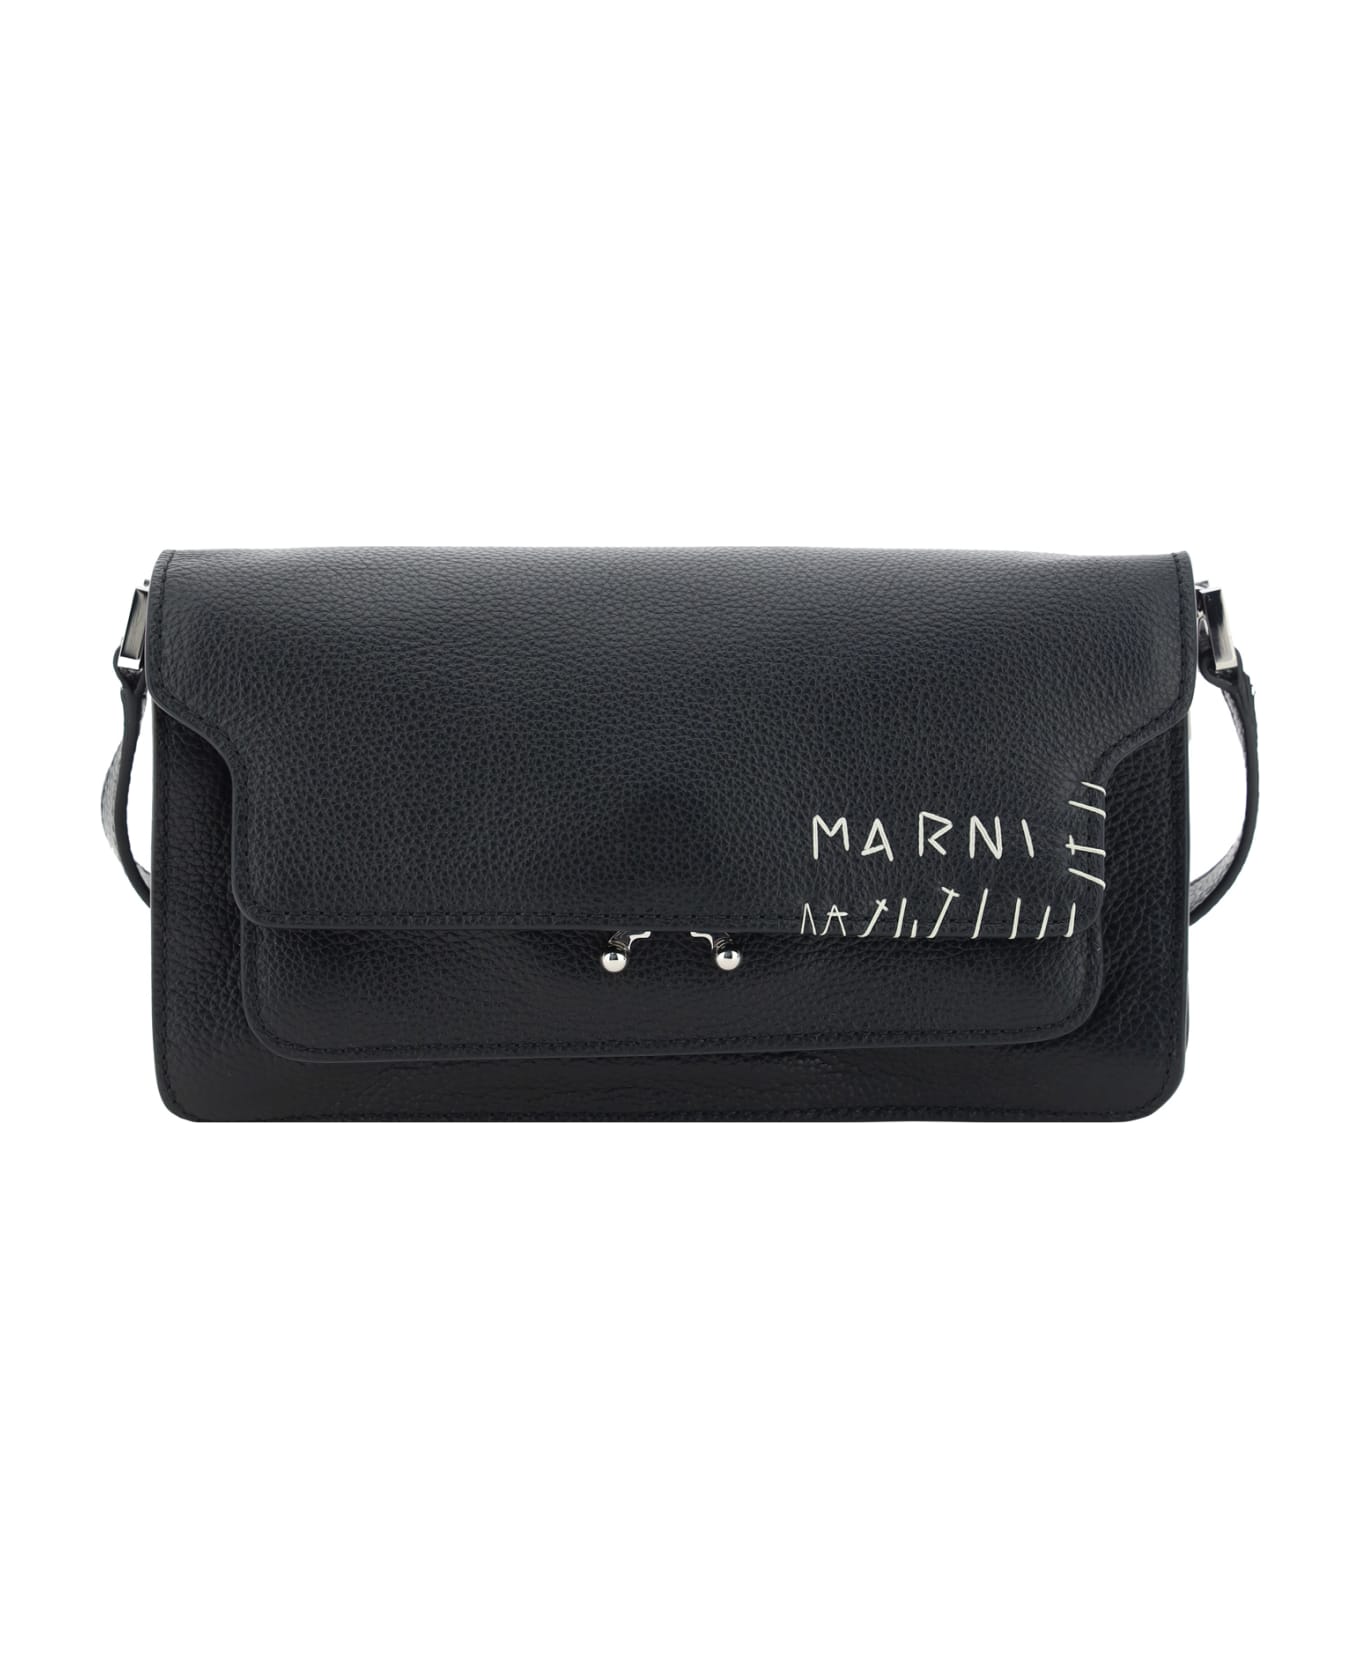 Marni Trunk Shoulder Bag - Black